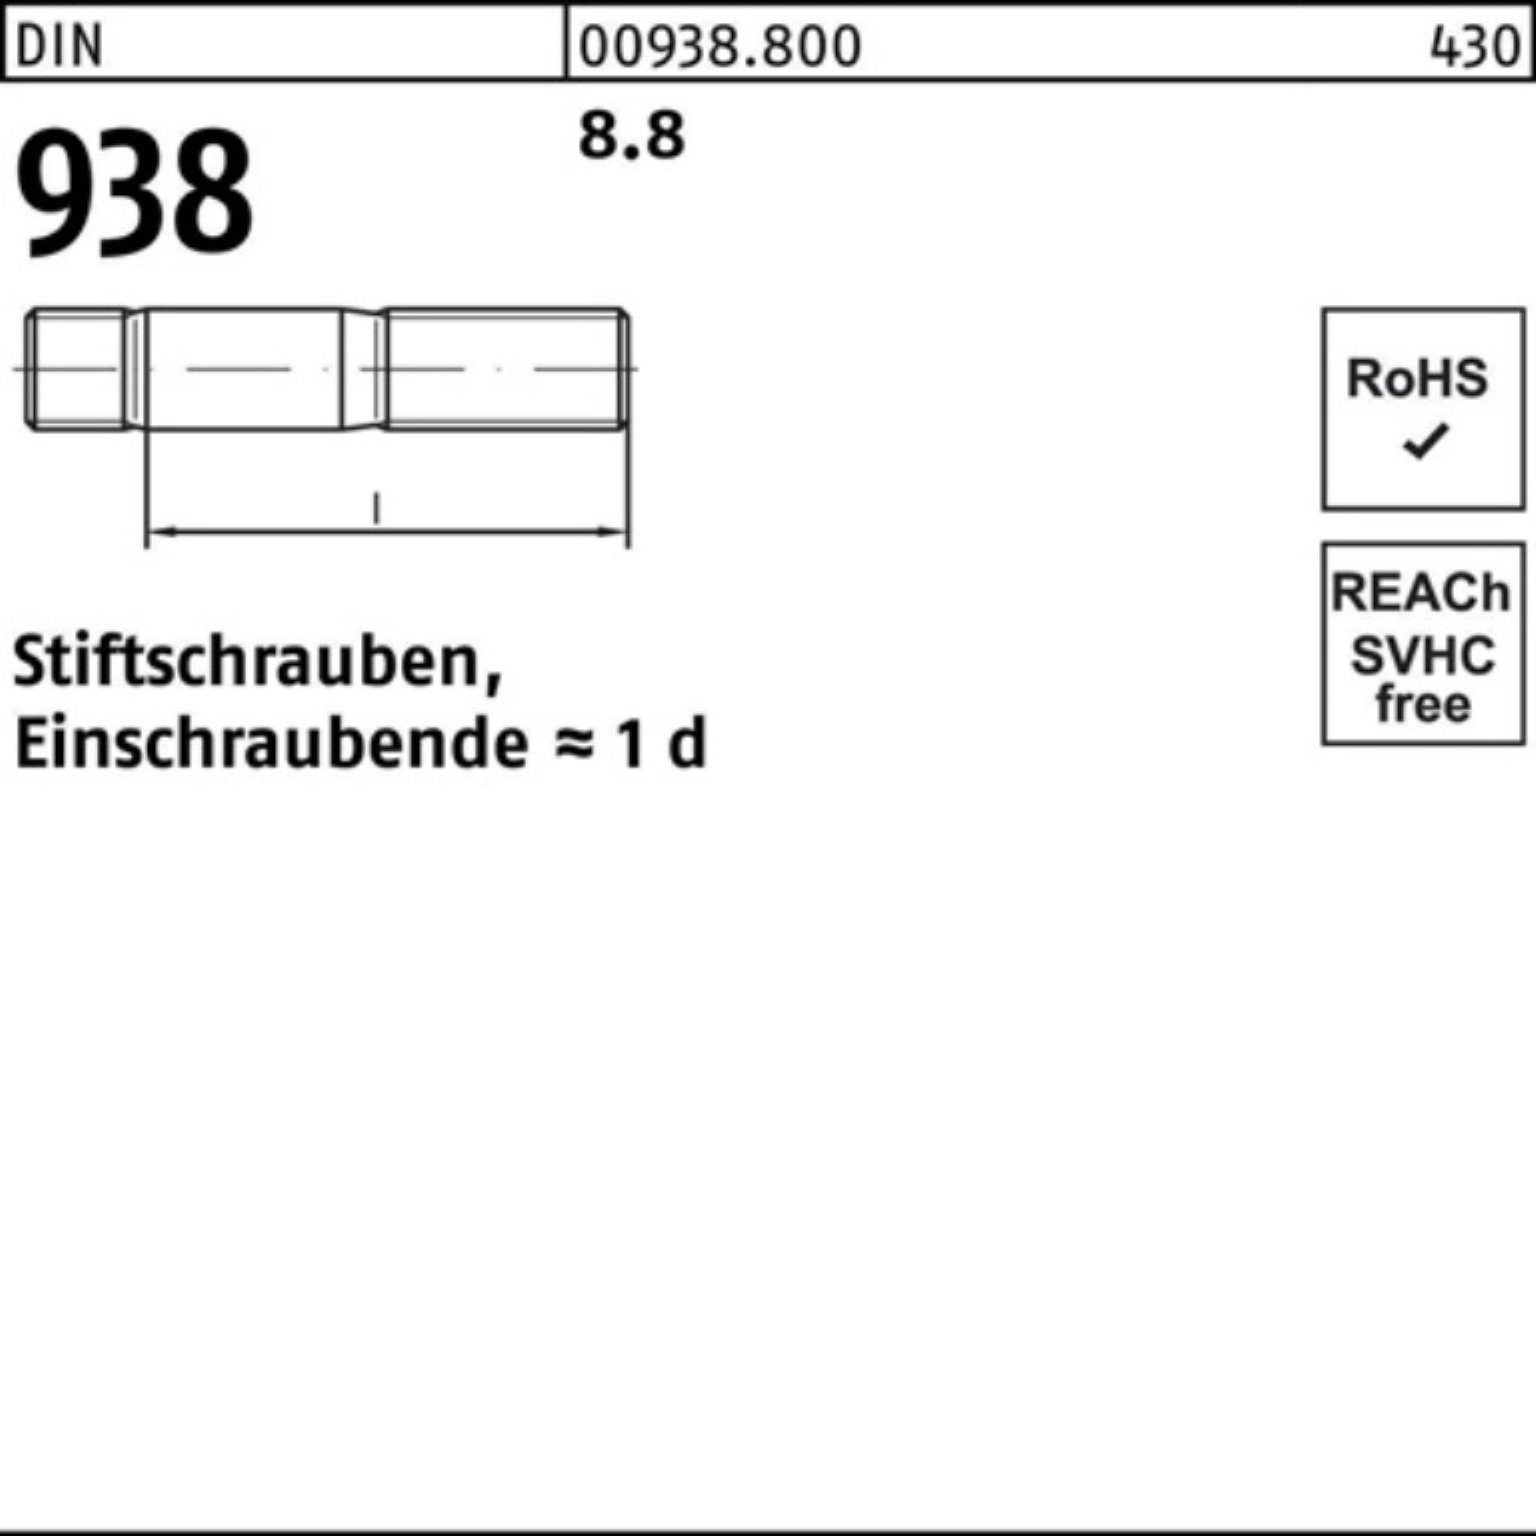 Reyher Stiftschraube 100er Pack Stiftschraube 80 M10x Stück 938 DIN 8.8 DIN 938 Sti 8.8 25